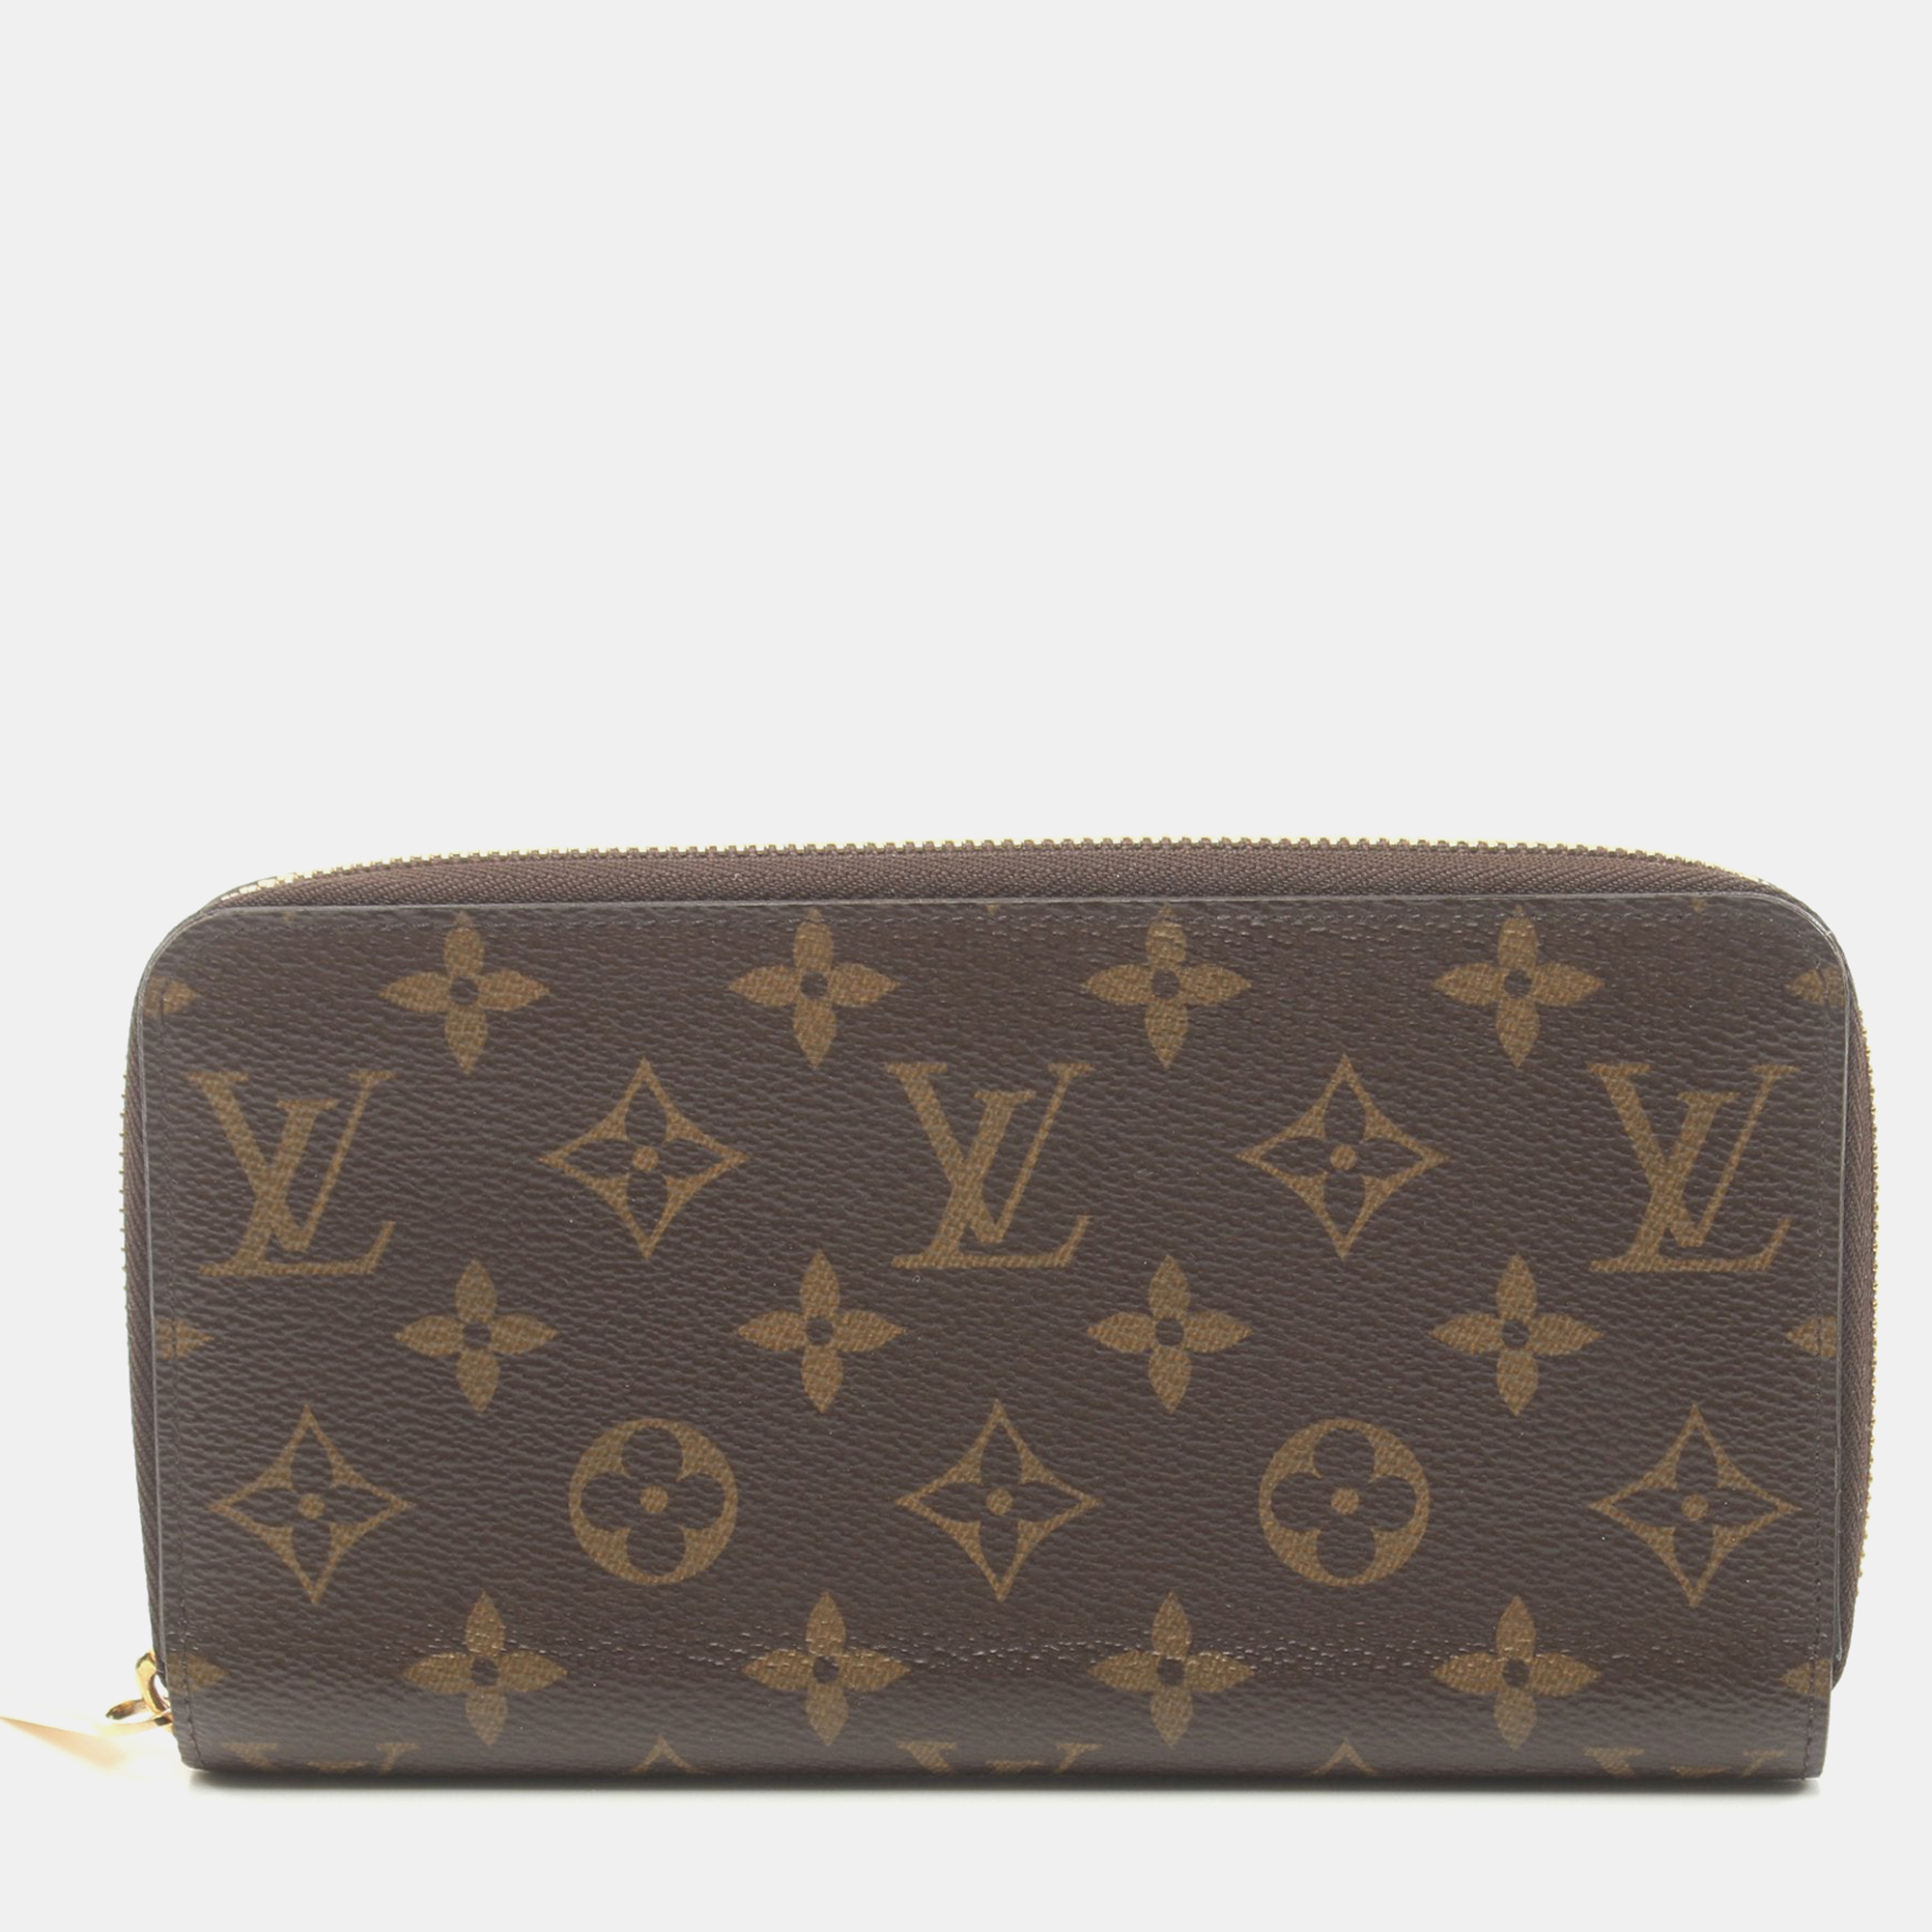 Louis vuitton zippy wallet monogram round zipper long wallet pvc brown